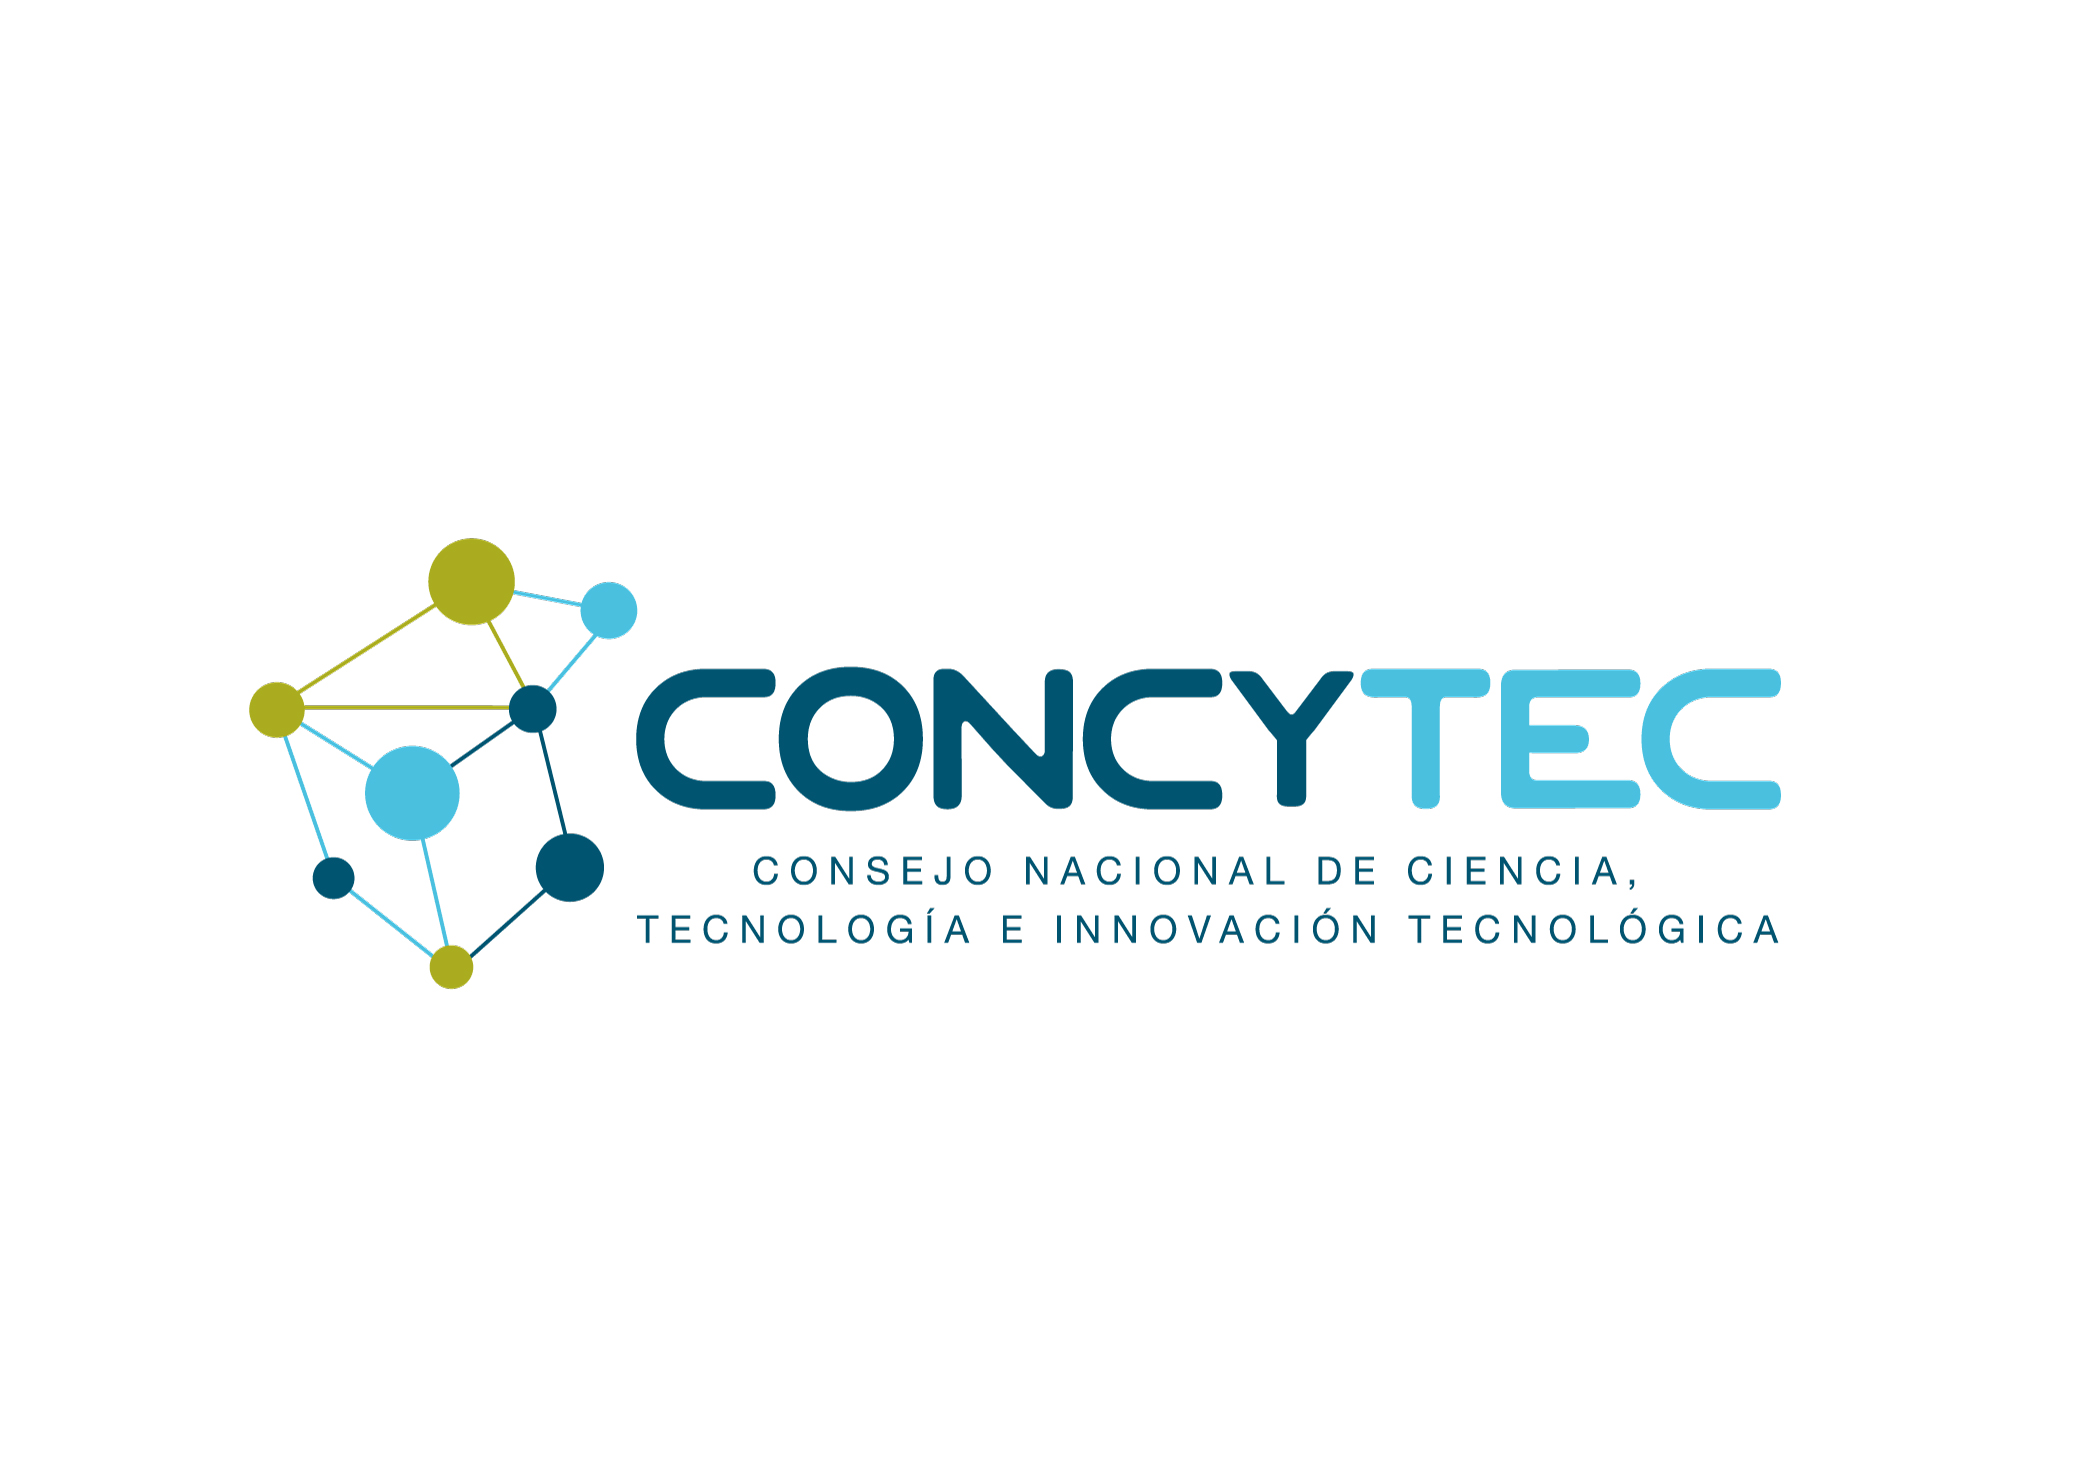 Consejo Nacional de Ciencia, Tecnologica e Innovacion Tecnologica (CONCYTEC) logo